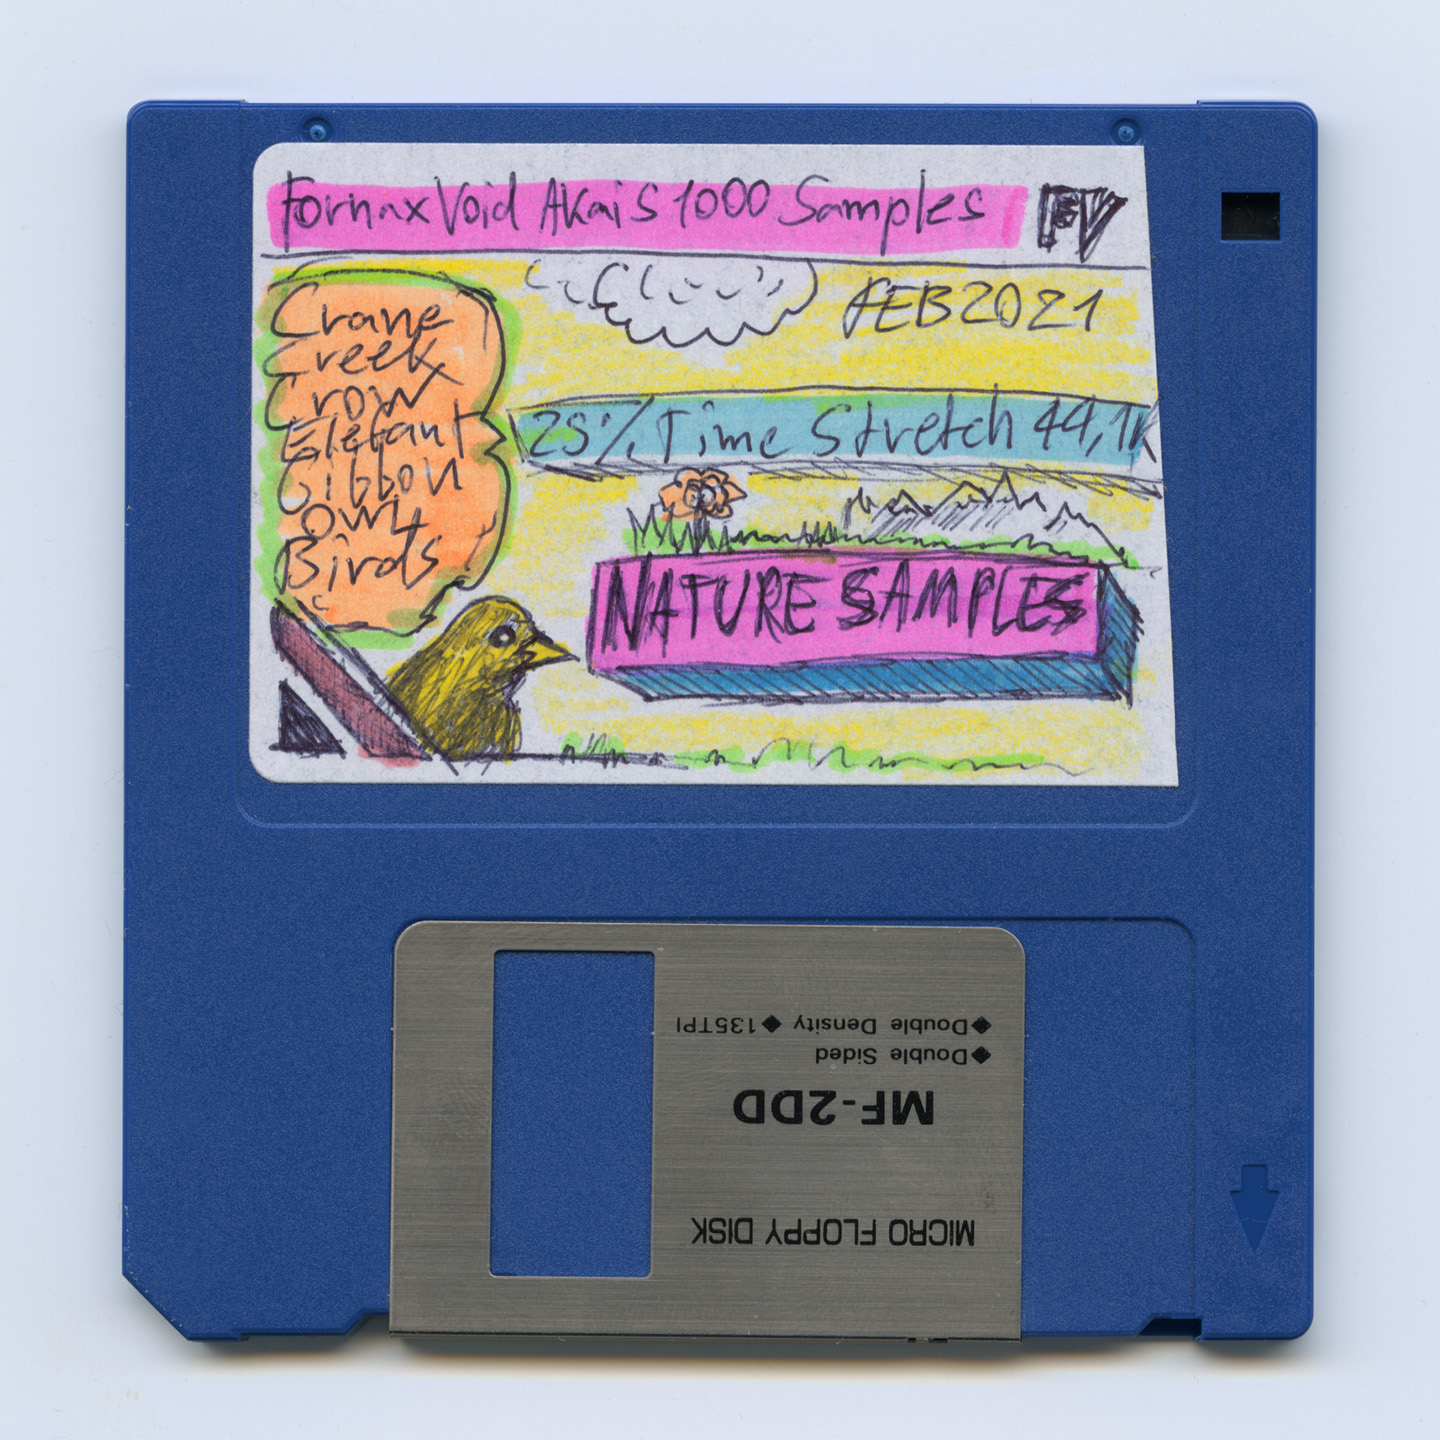 Fornax Void Akai S1000 samples floppy disk. February 2021.